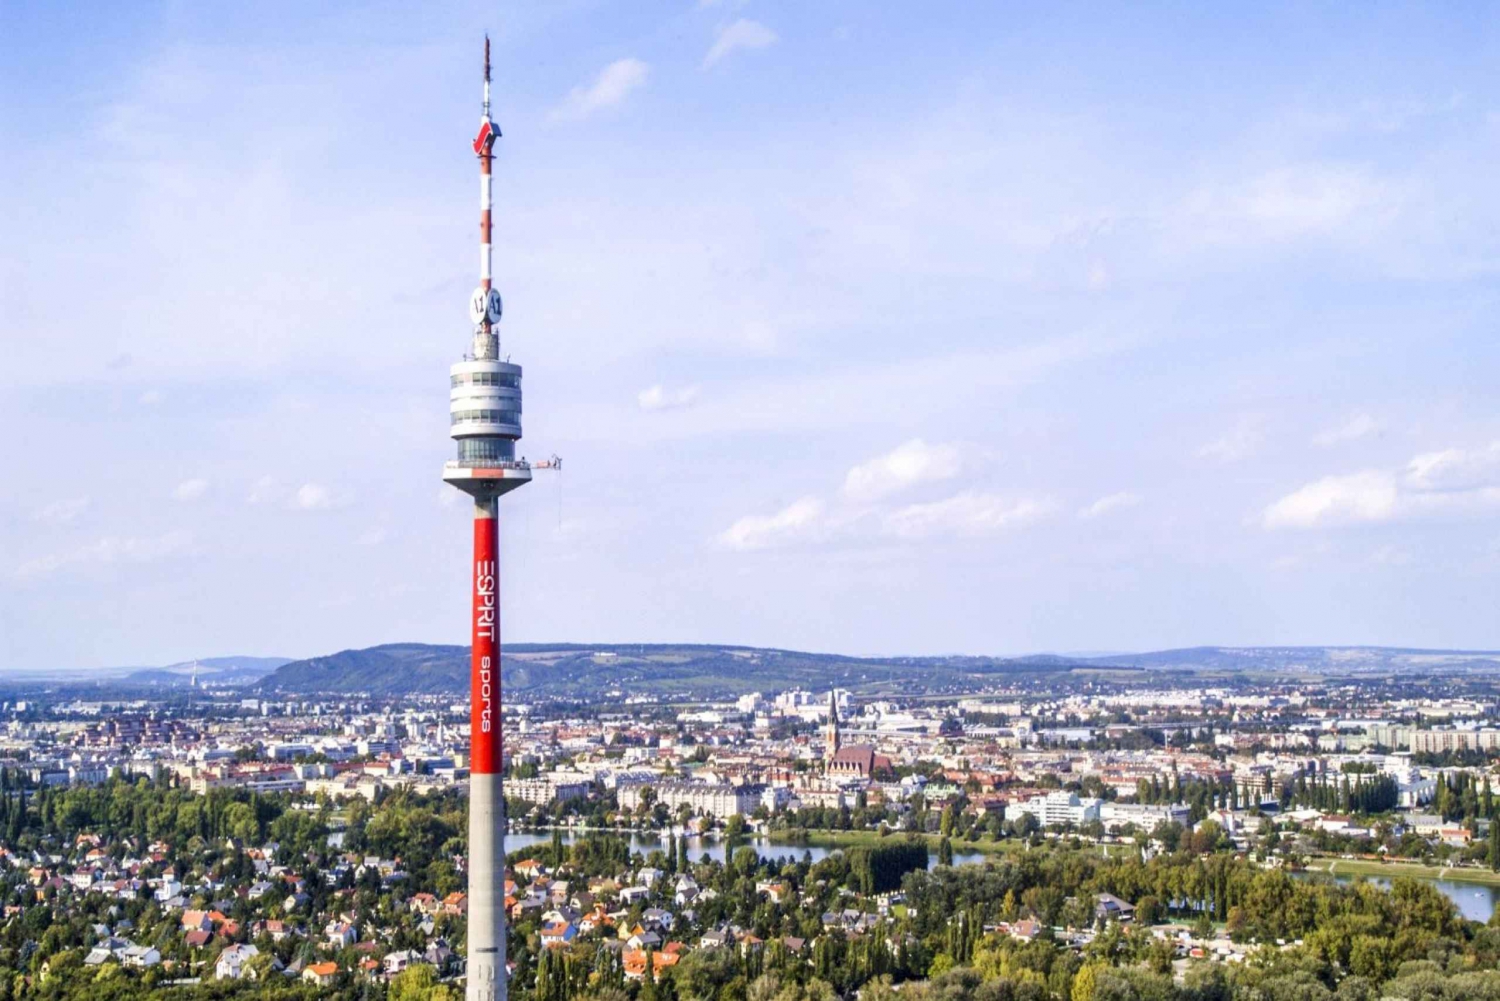 Excursão sem fila à Torre do Danúbio Donauturm em Viena, traslado